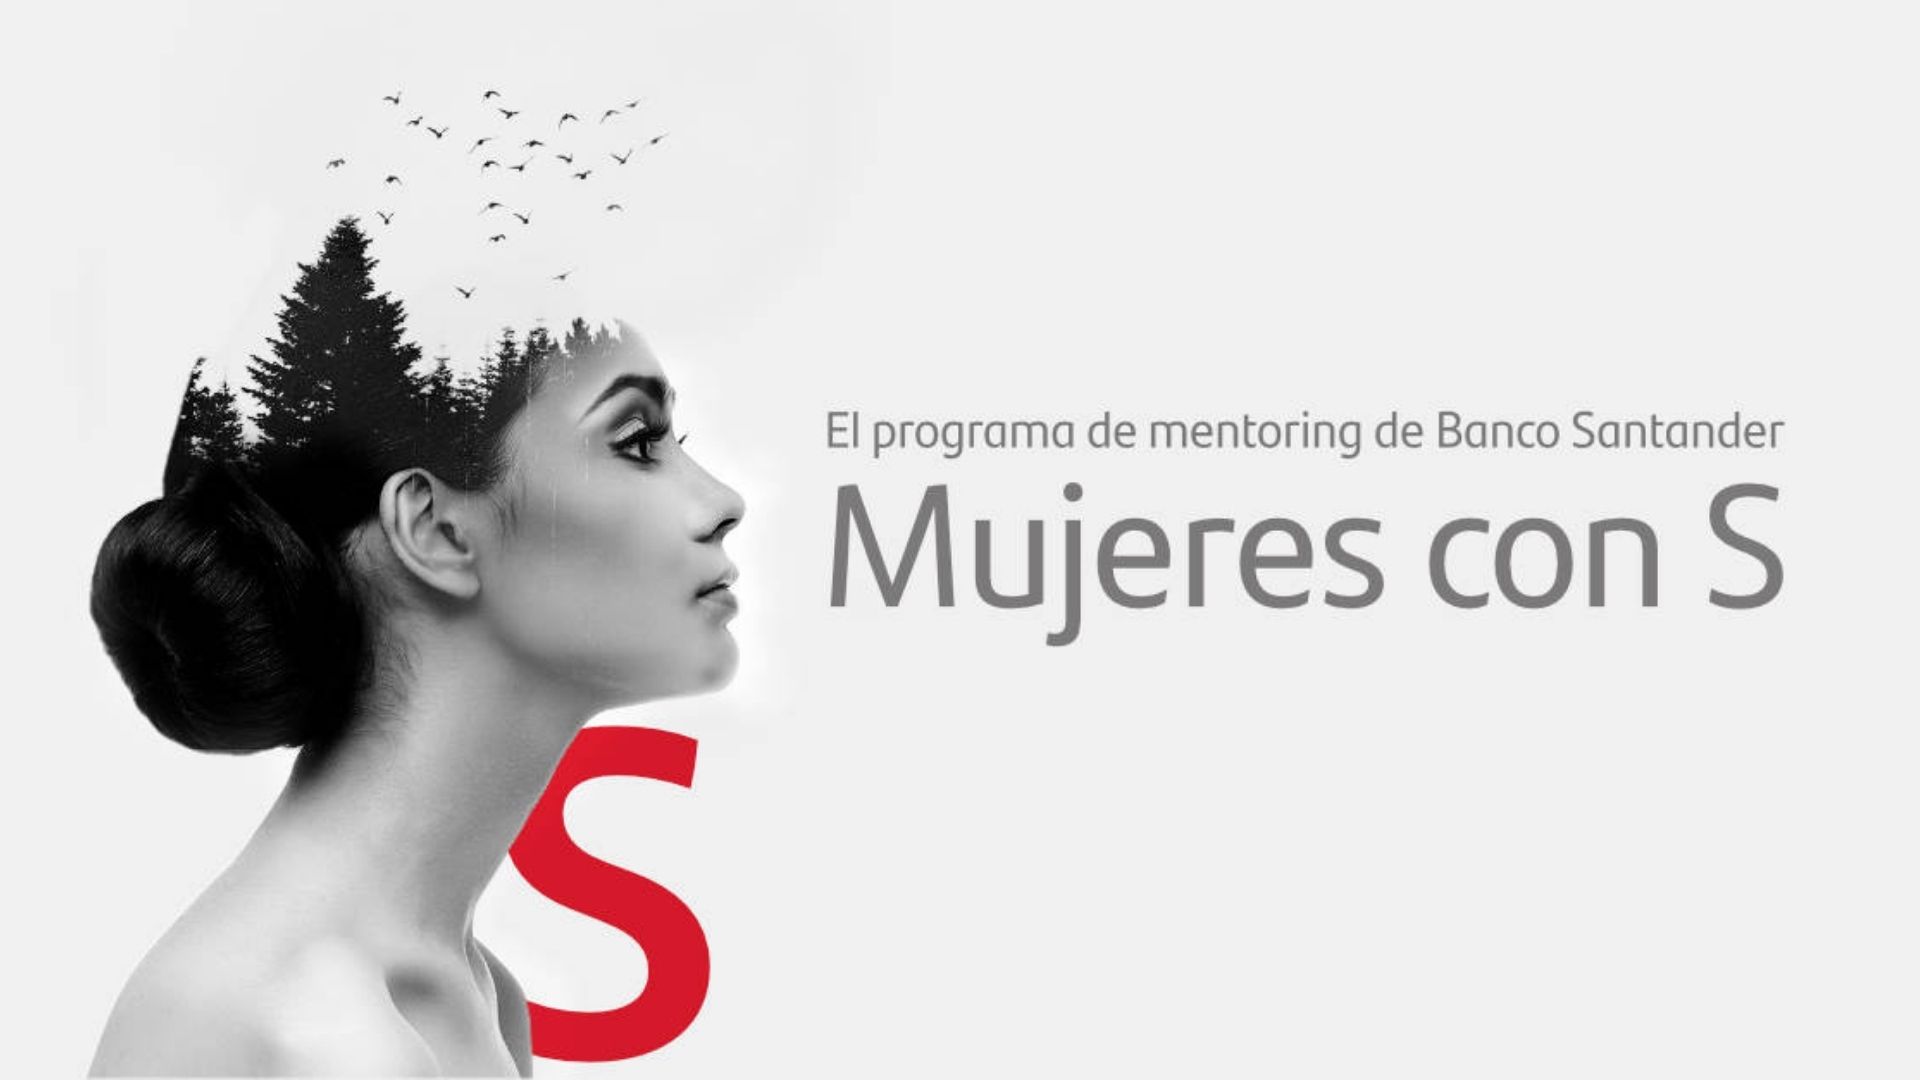 MSR Marketing in Mujeres con S program